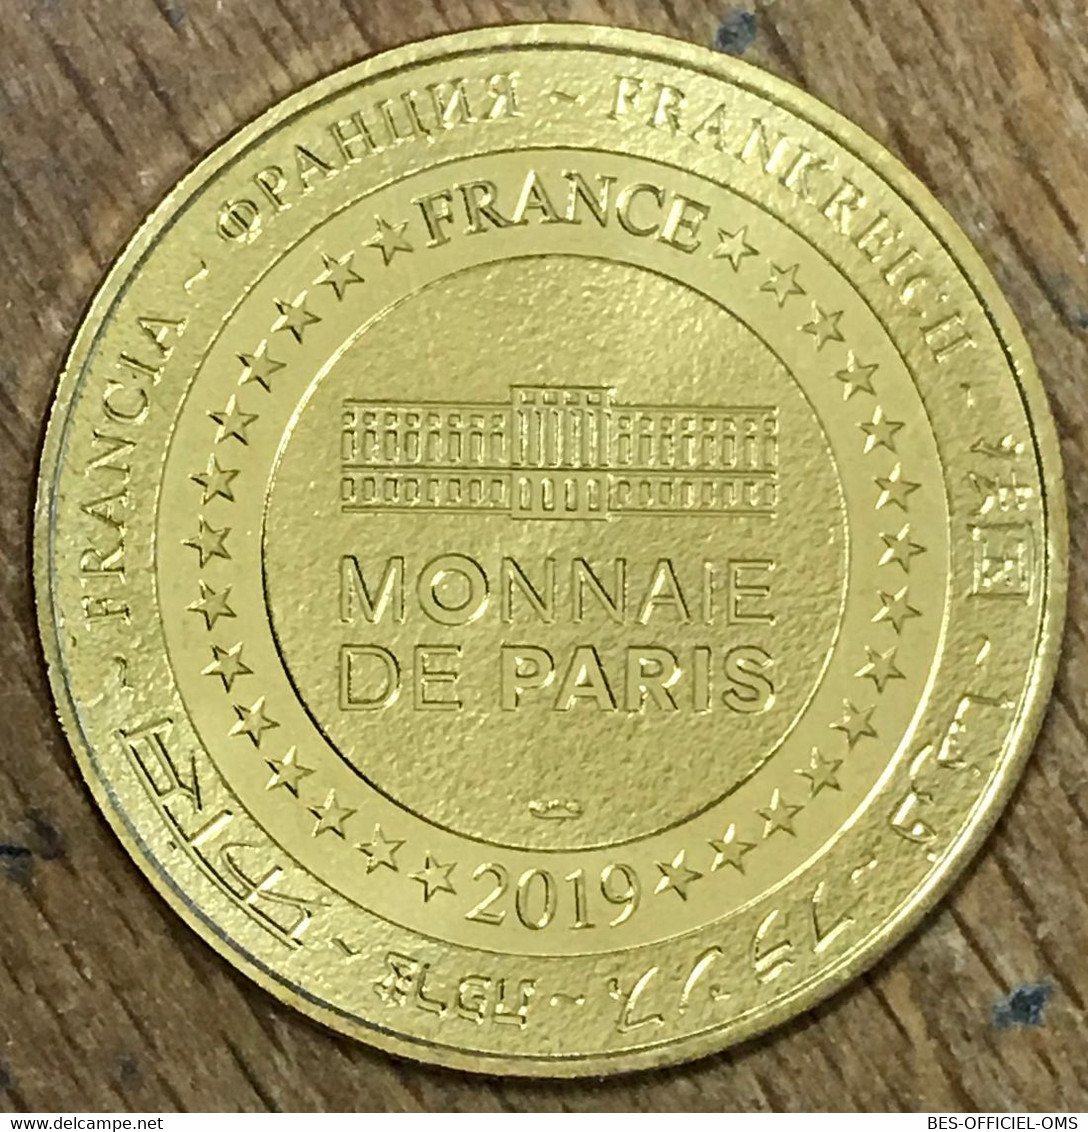 85 LES SABLES D'OLONNE BLOCKHAUS HÔPITAL MDP 2019 MÉDAILLE MONNAIE DE PARIS JETON TOURISTIQUE MEDALS COINS TOKENS - 2019